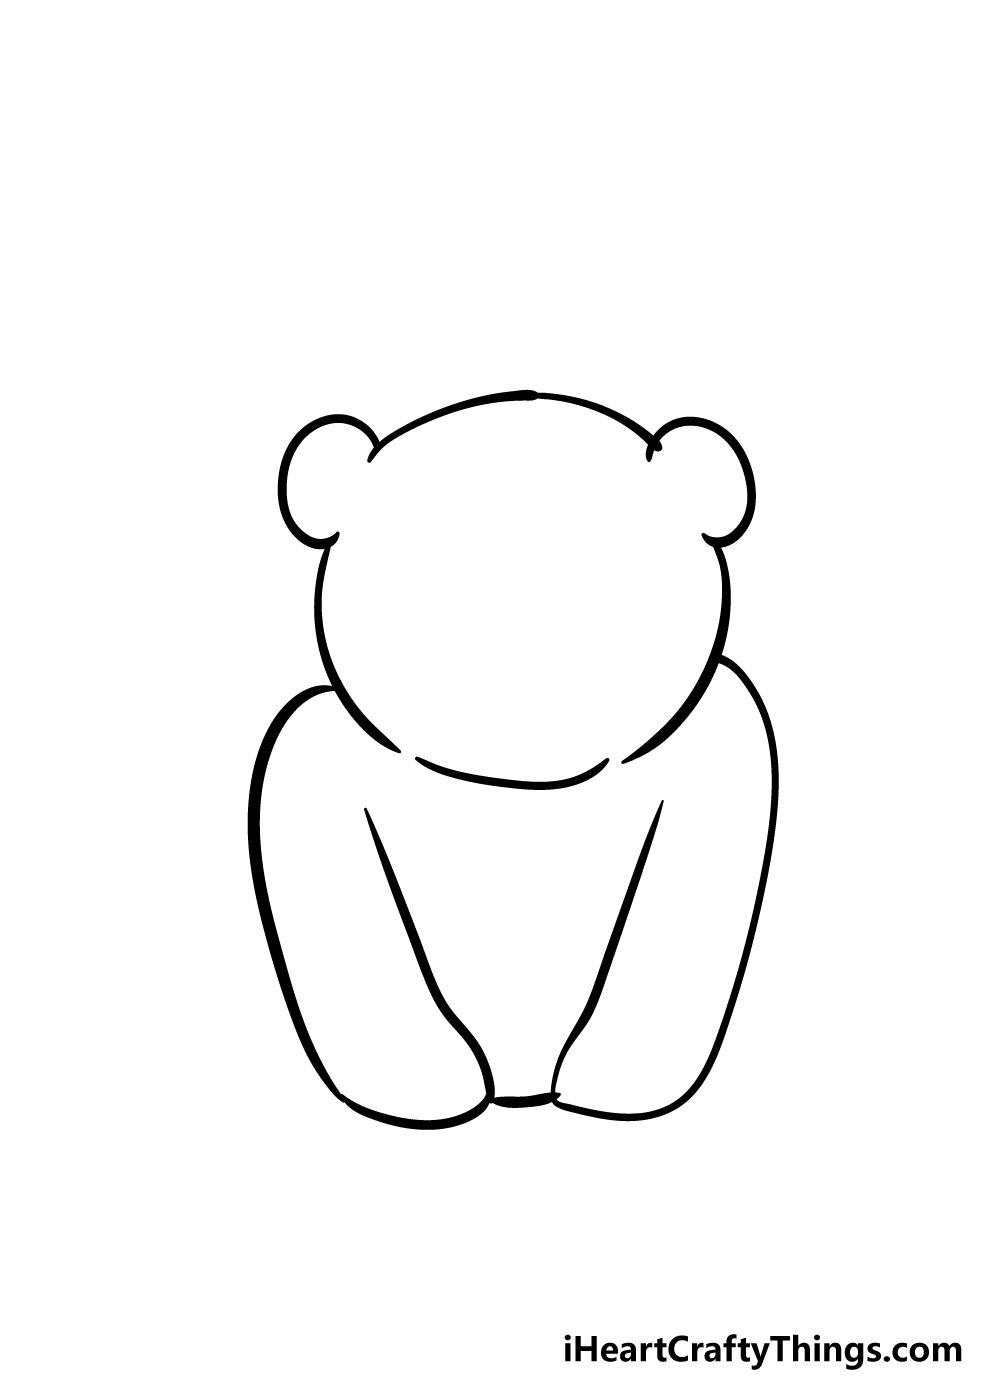 Panda2 - Hướng dẫn chi tiết cách vẽ con gấu trúc cute dễ thương với 7 bước đơn giản